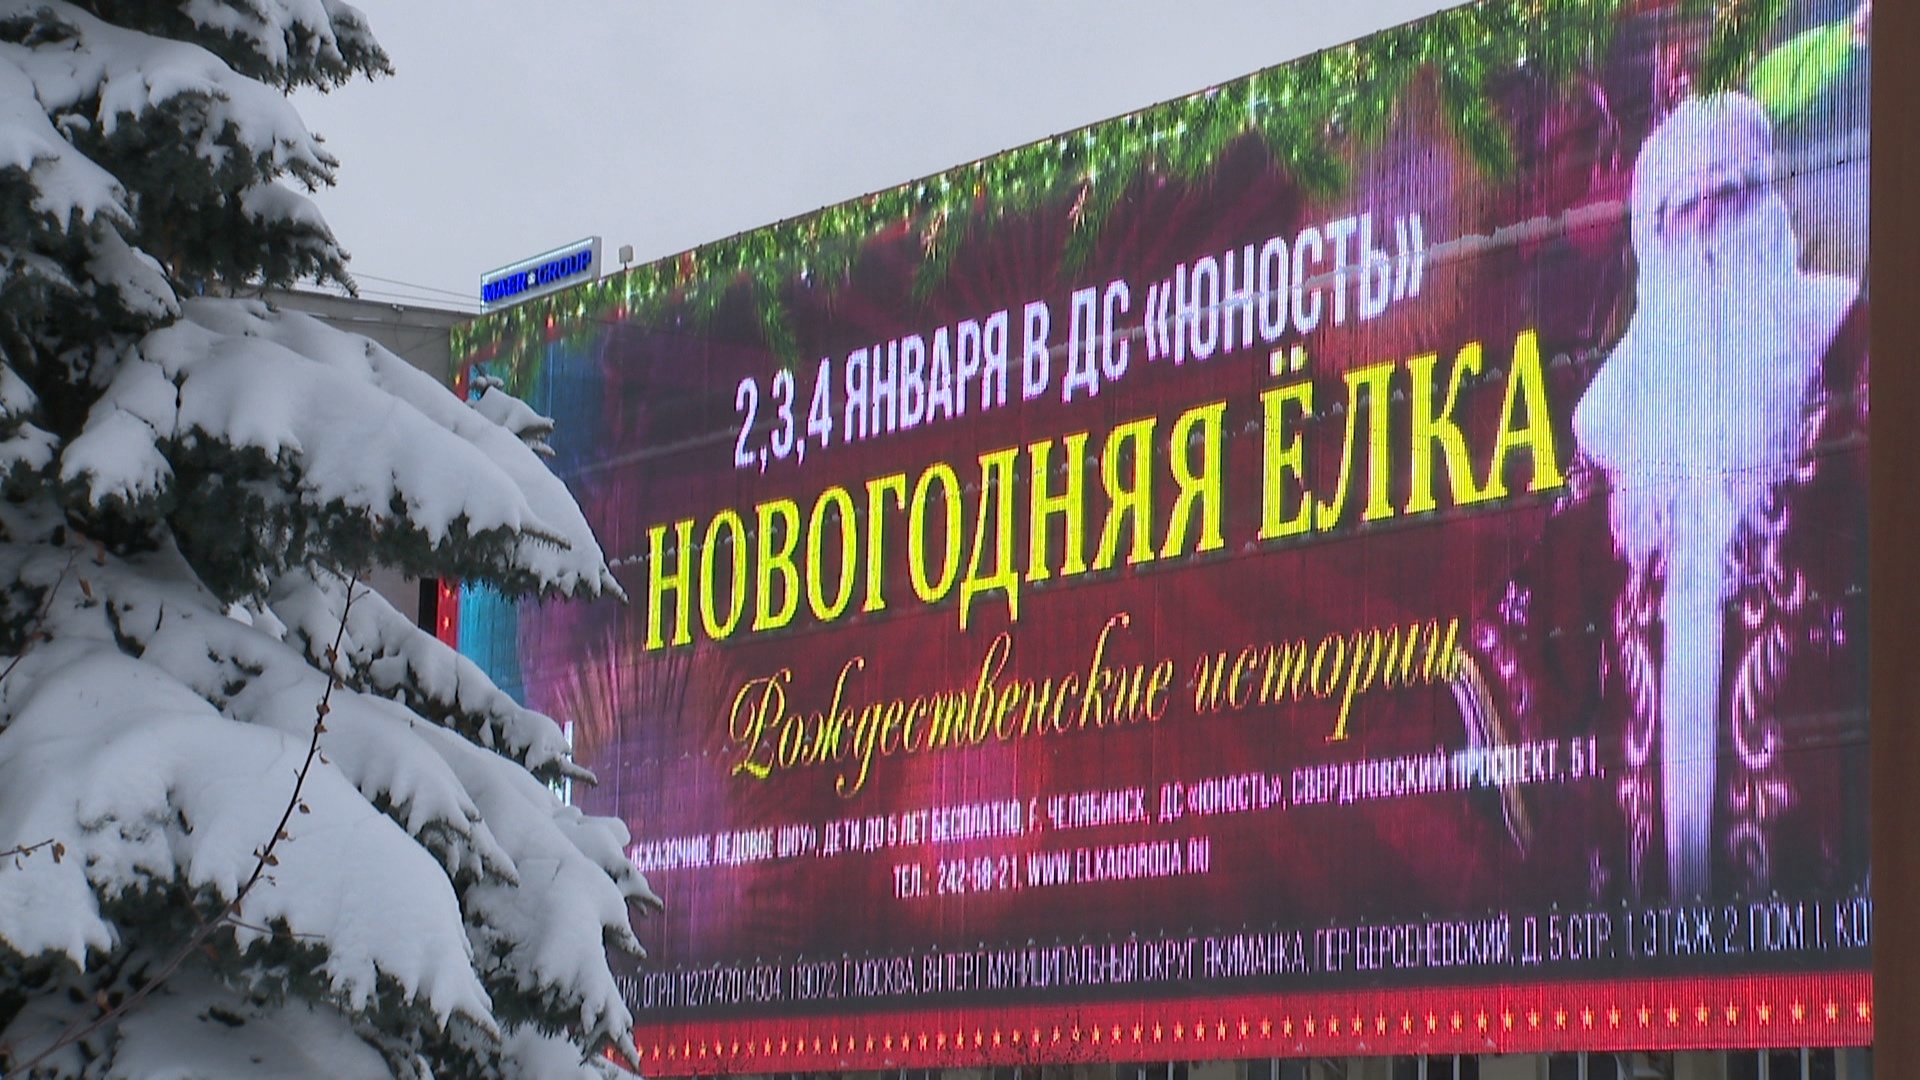 Семейный праздник: как проходит в Челябинске ледовое шоу "Рождественские истории"